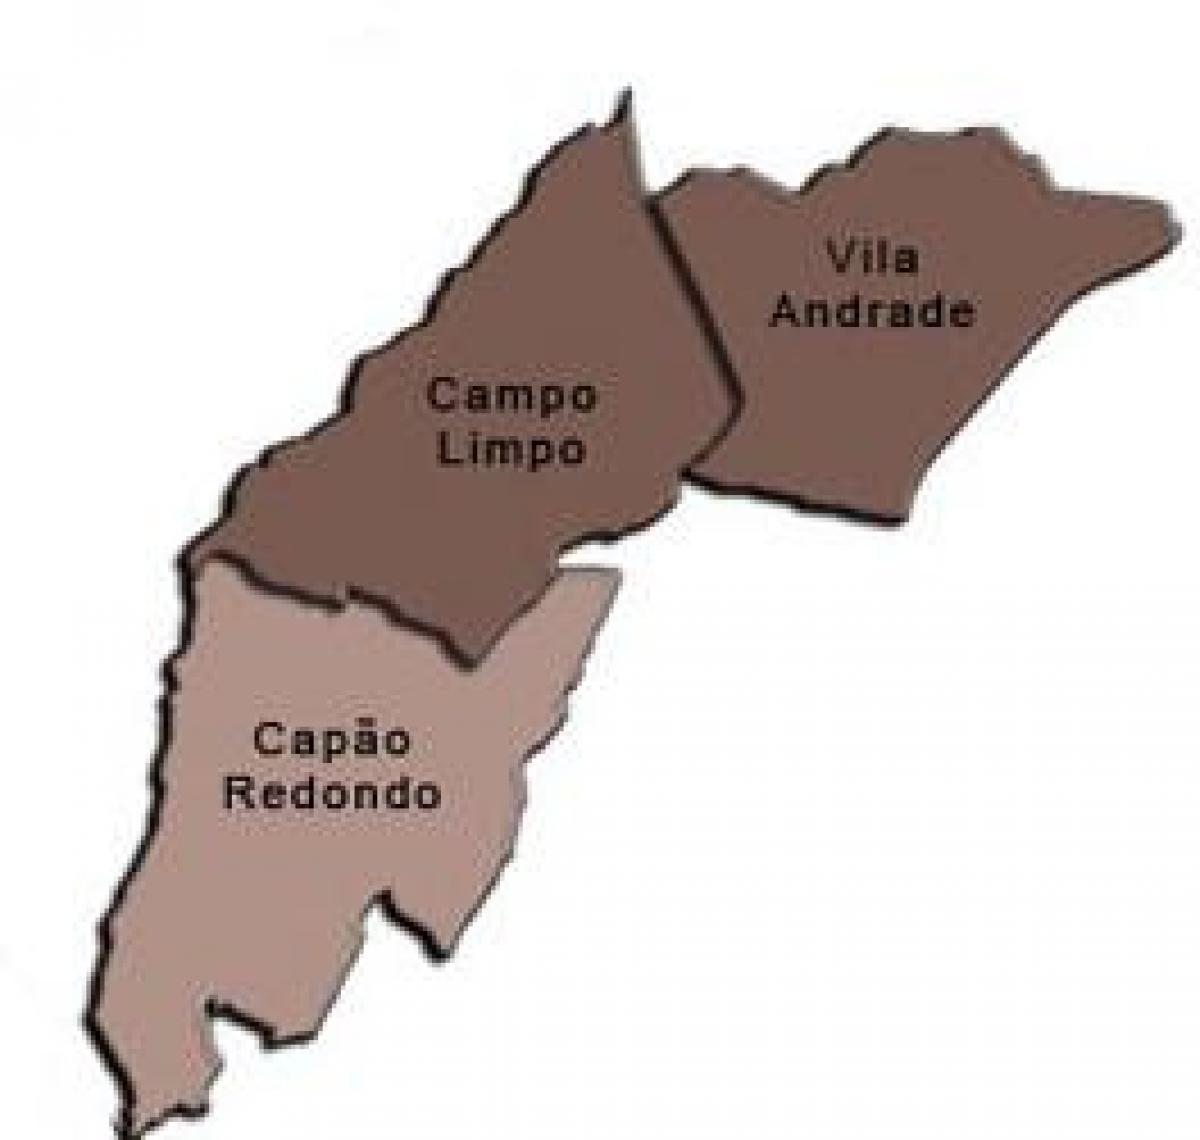 Map of Campo Limpo sub-prefecture